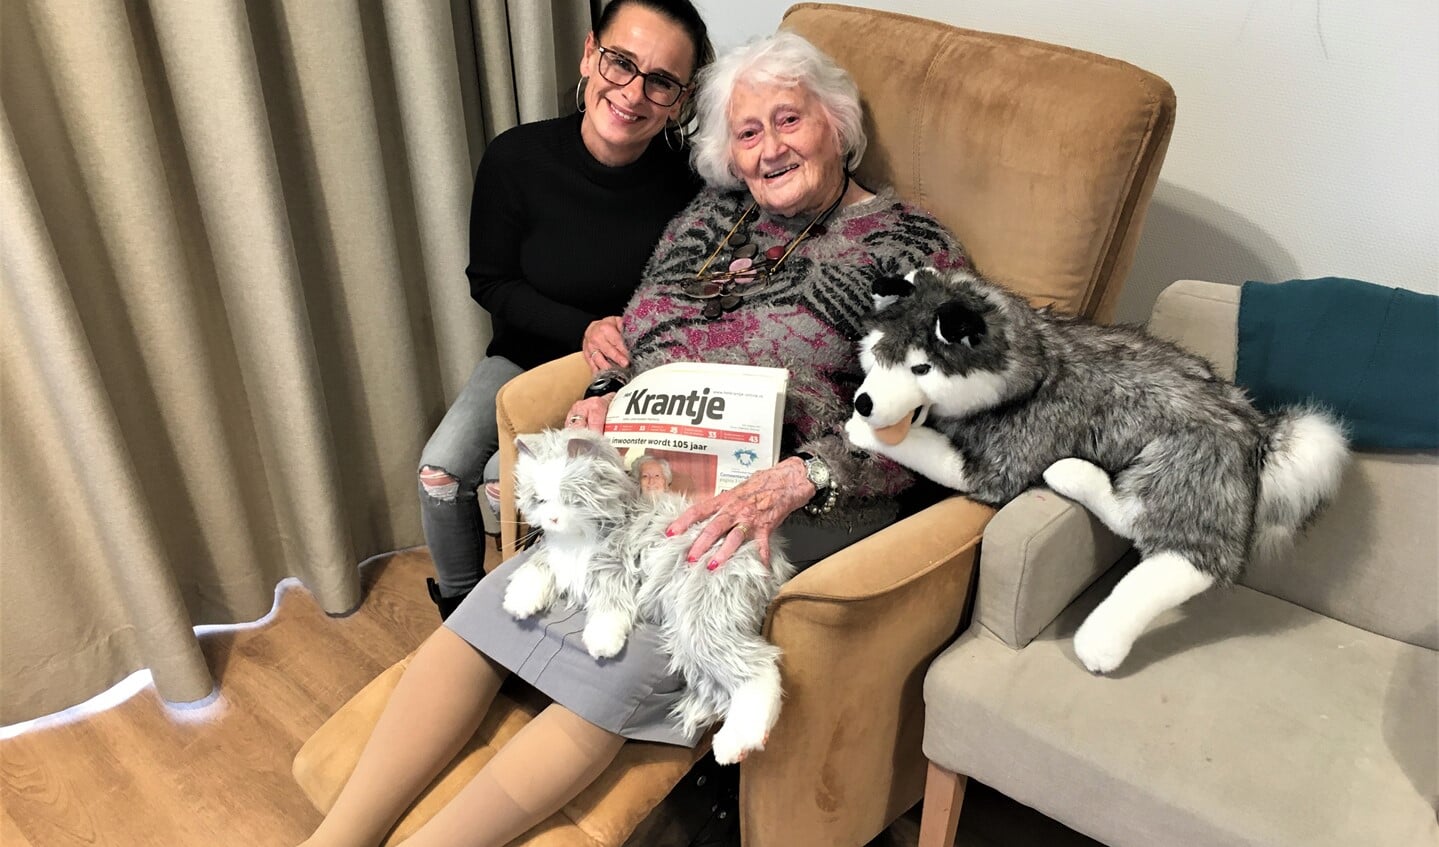 En de 106-jarige met haar hulp Annie die zij beschouwt als familie (foto: DJ).